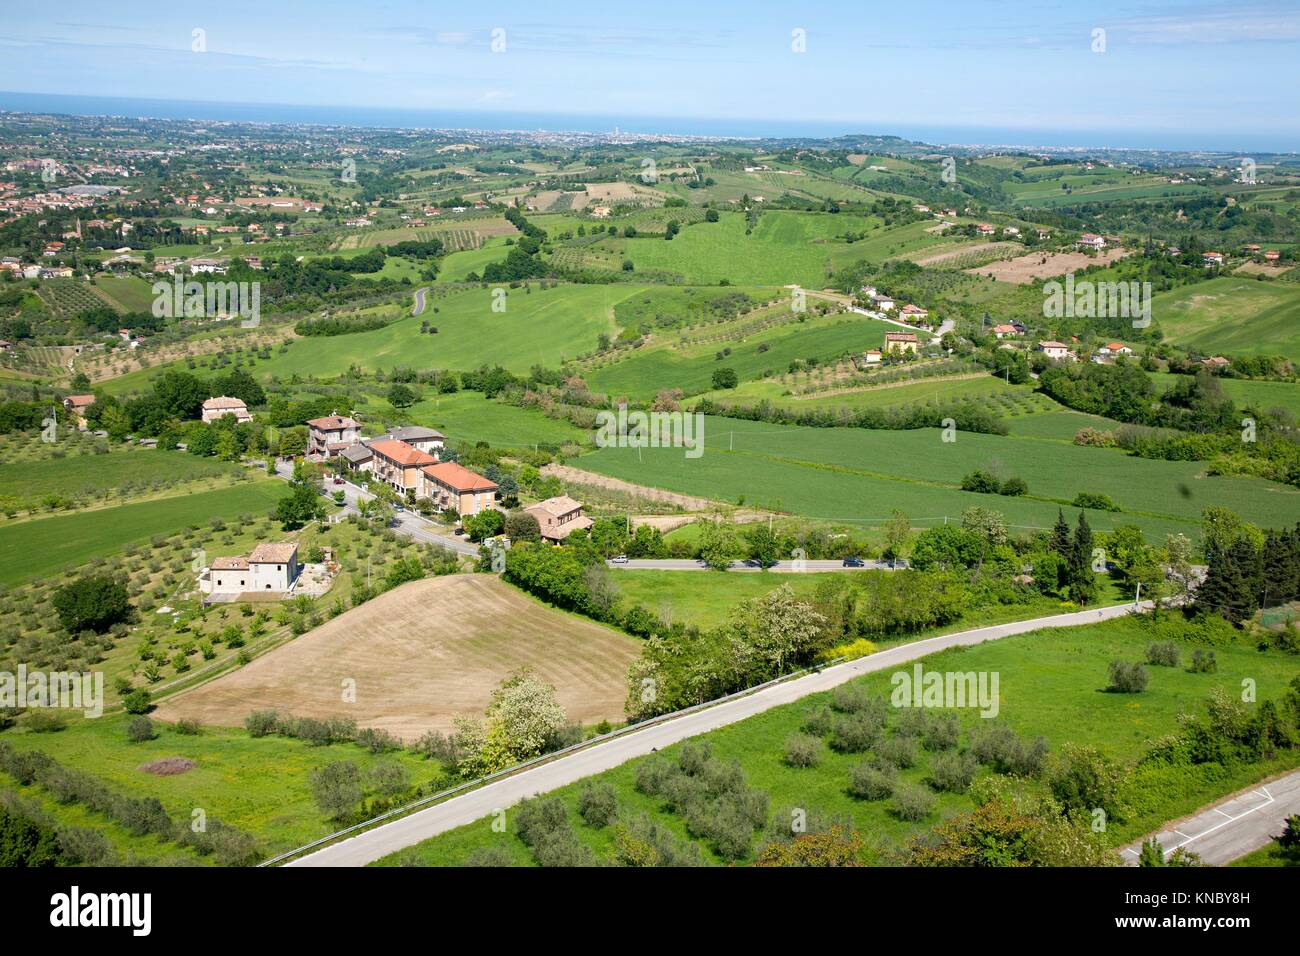 Comune di Verucchio, Italy. Stock Photo